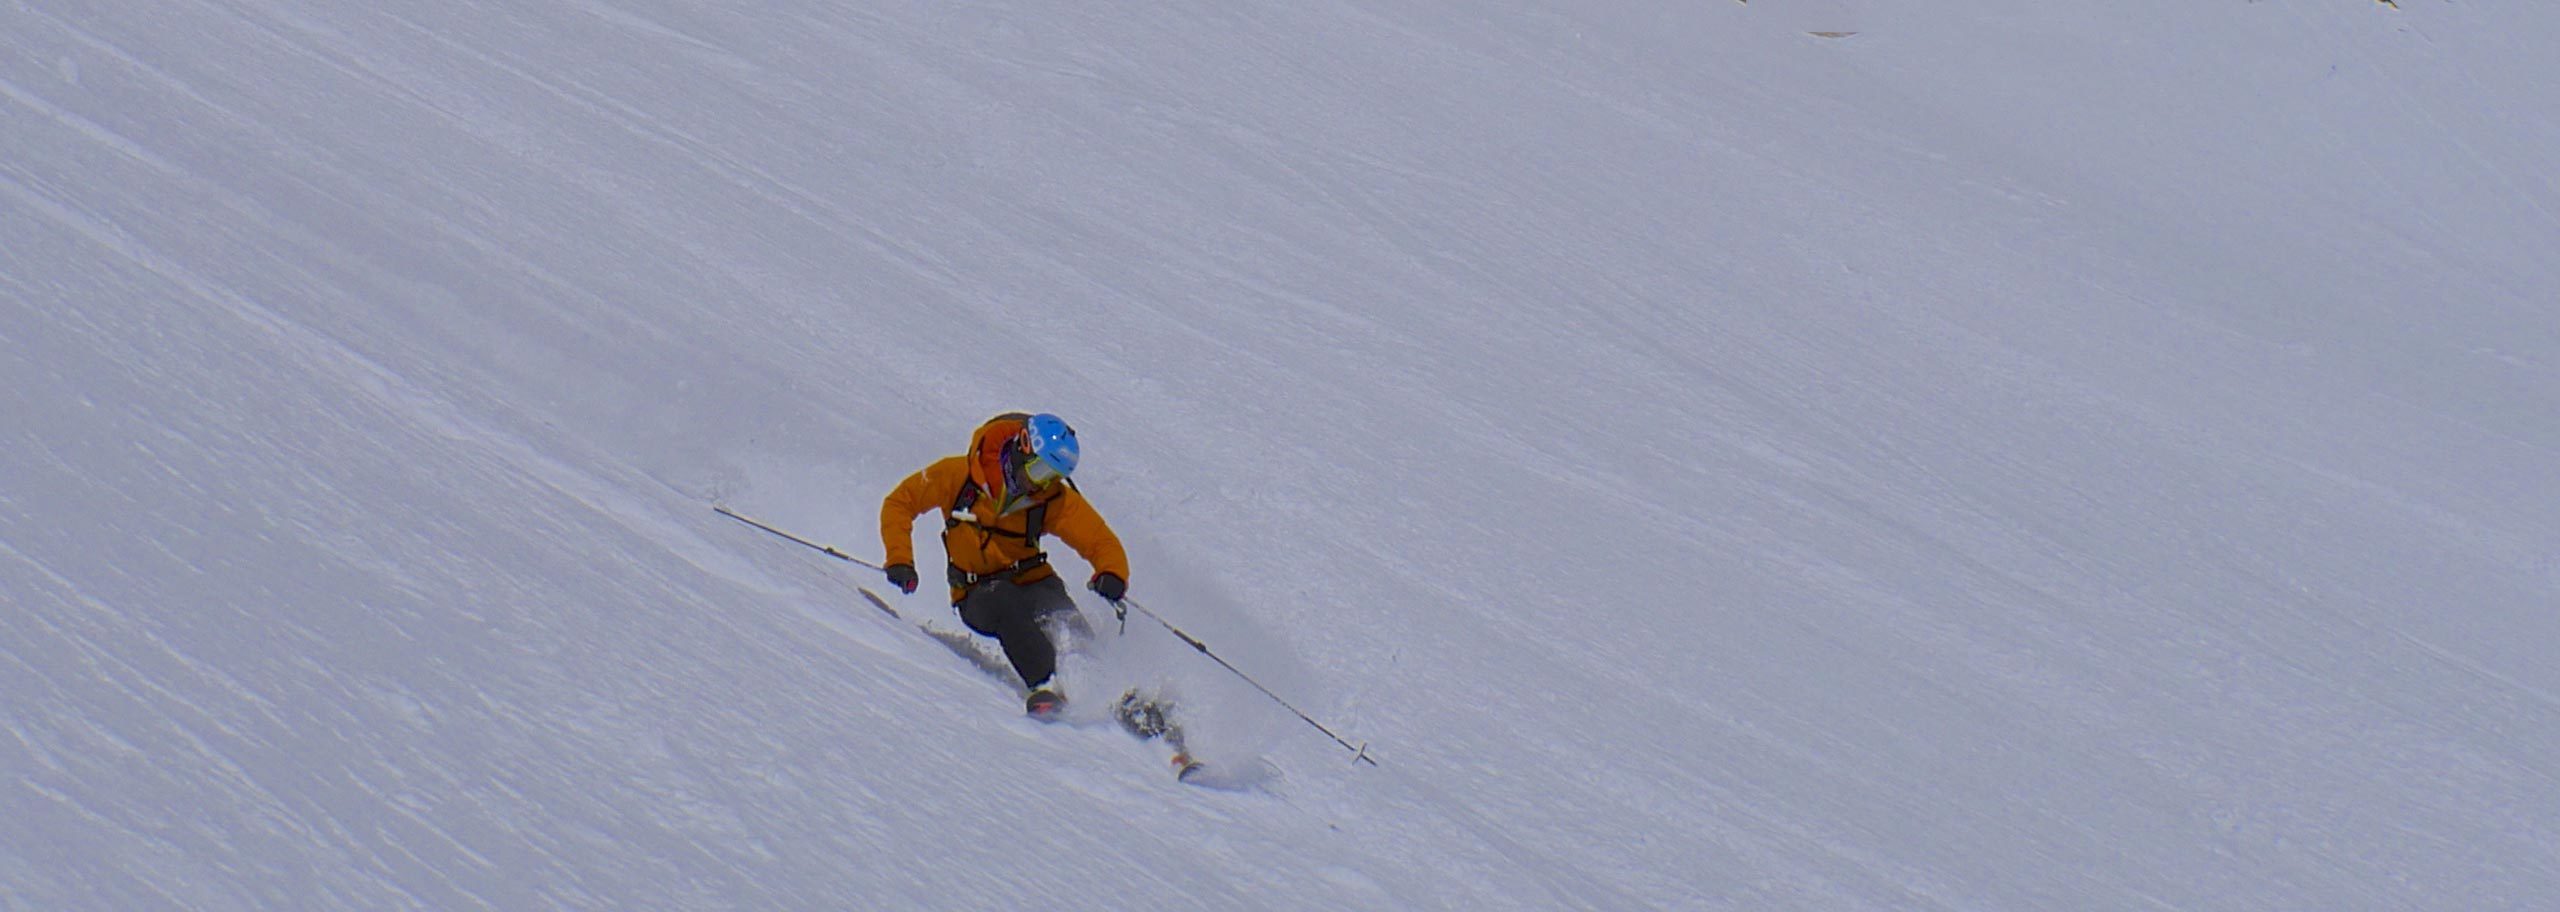 Off-piste Skiing in Sansicario, Guided Freeride Skiing